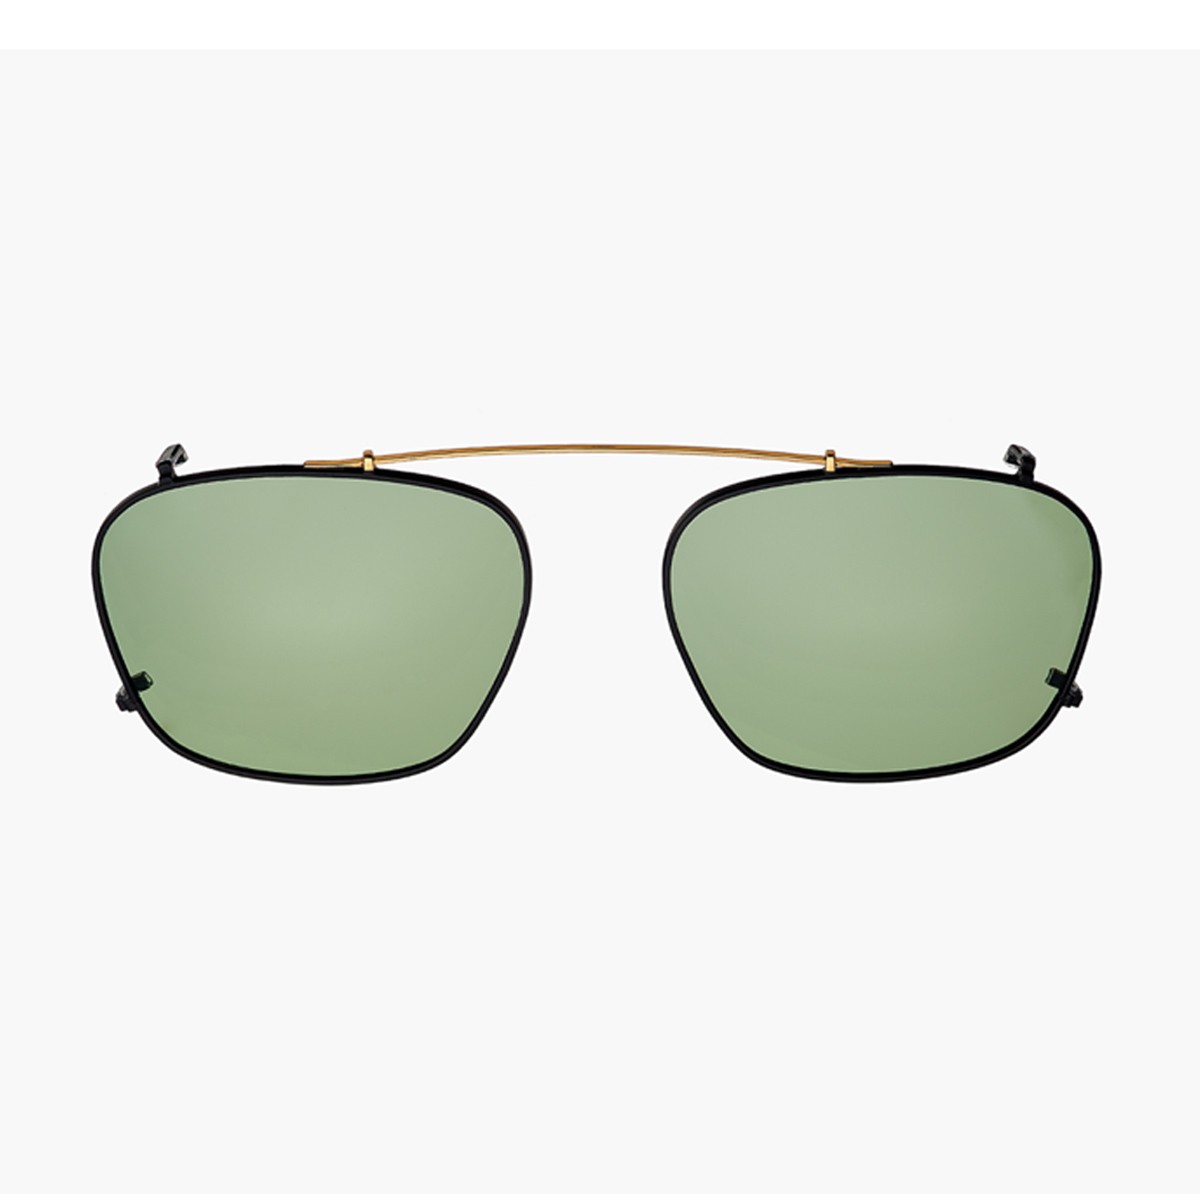 Talla | Men's sunglasses